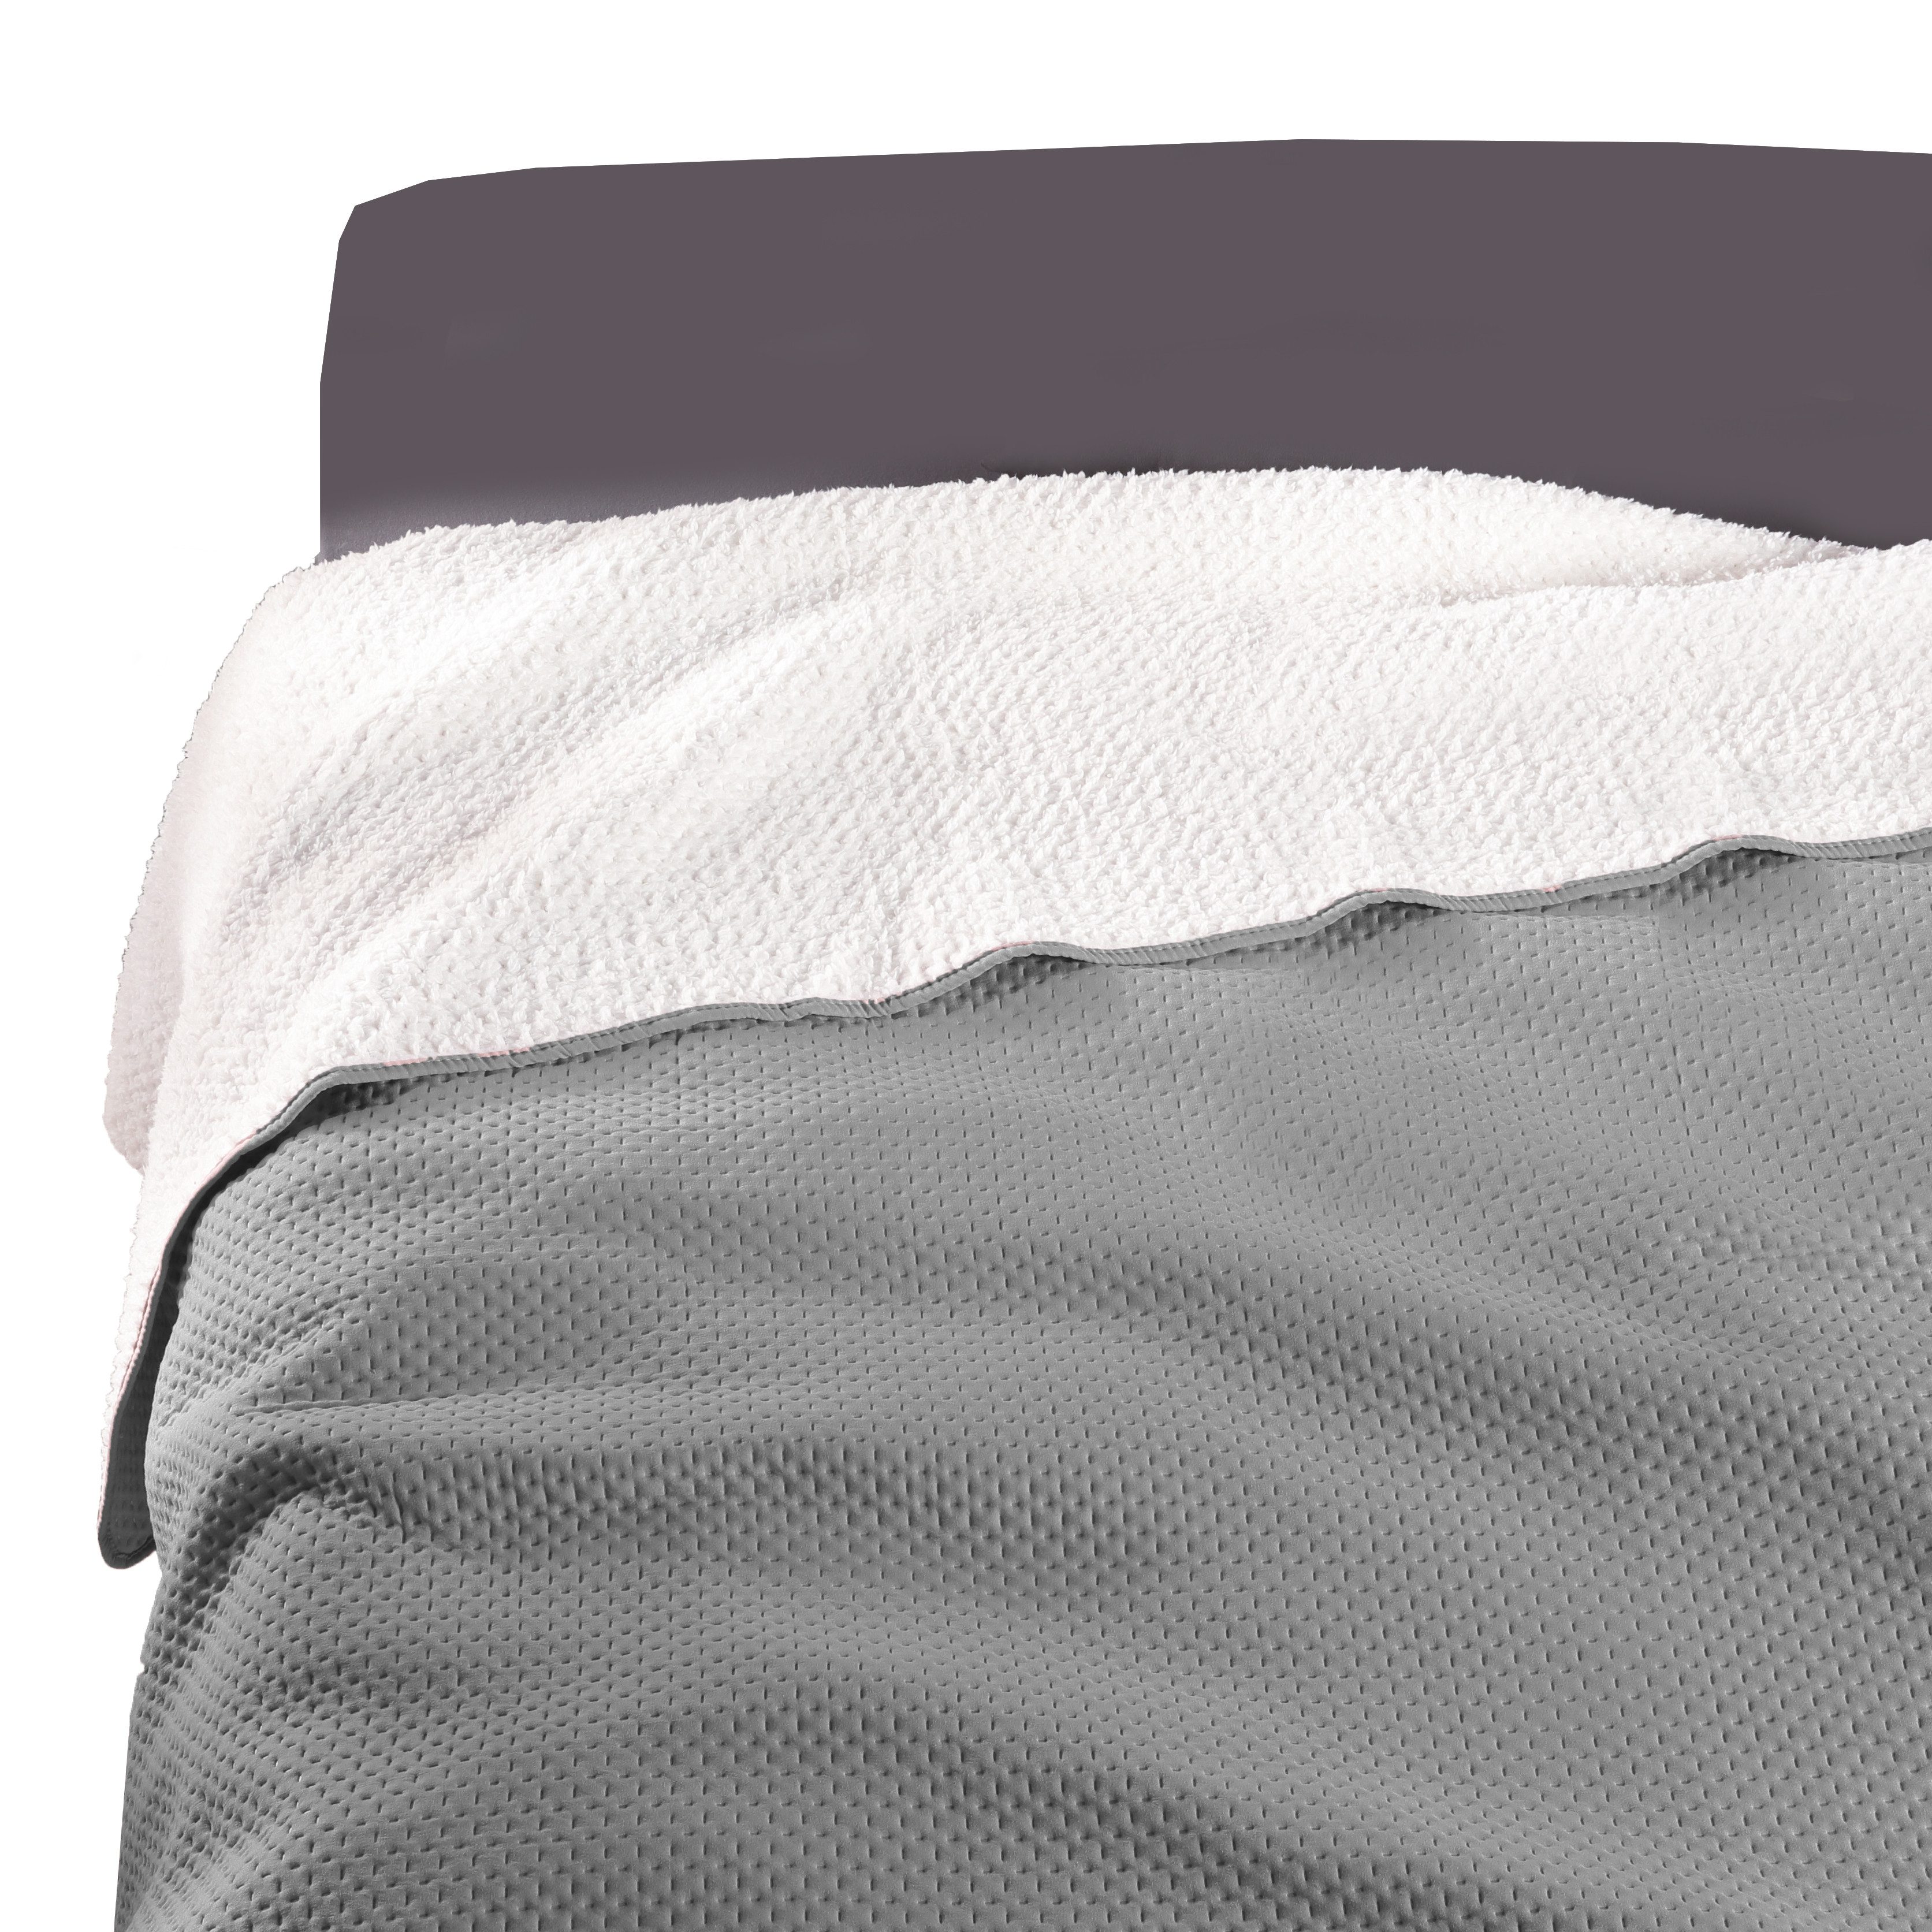 Bettüberwurf Soft-Touch, Delindo Lifestyle, flauschig warme Rückseite